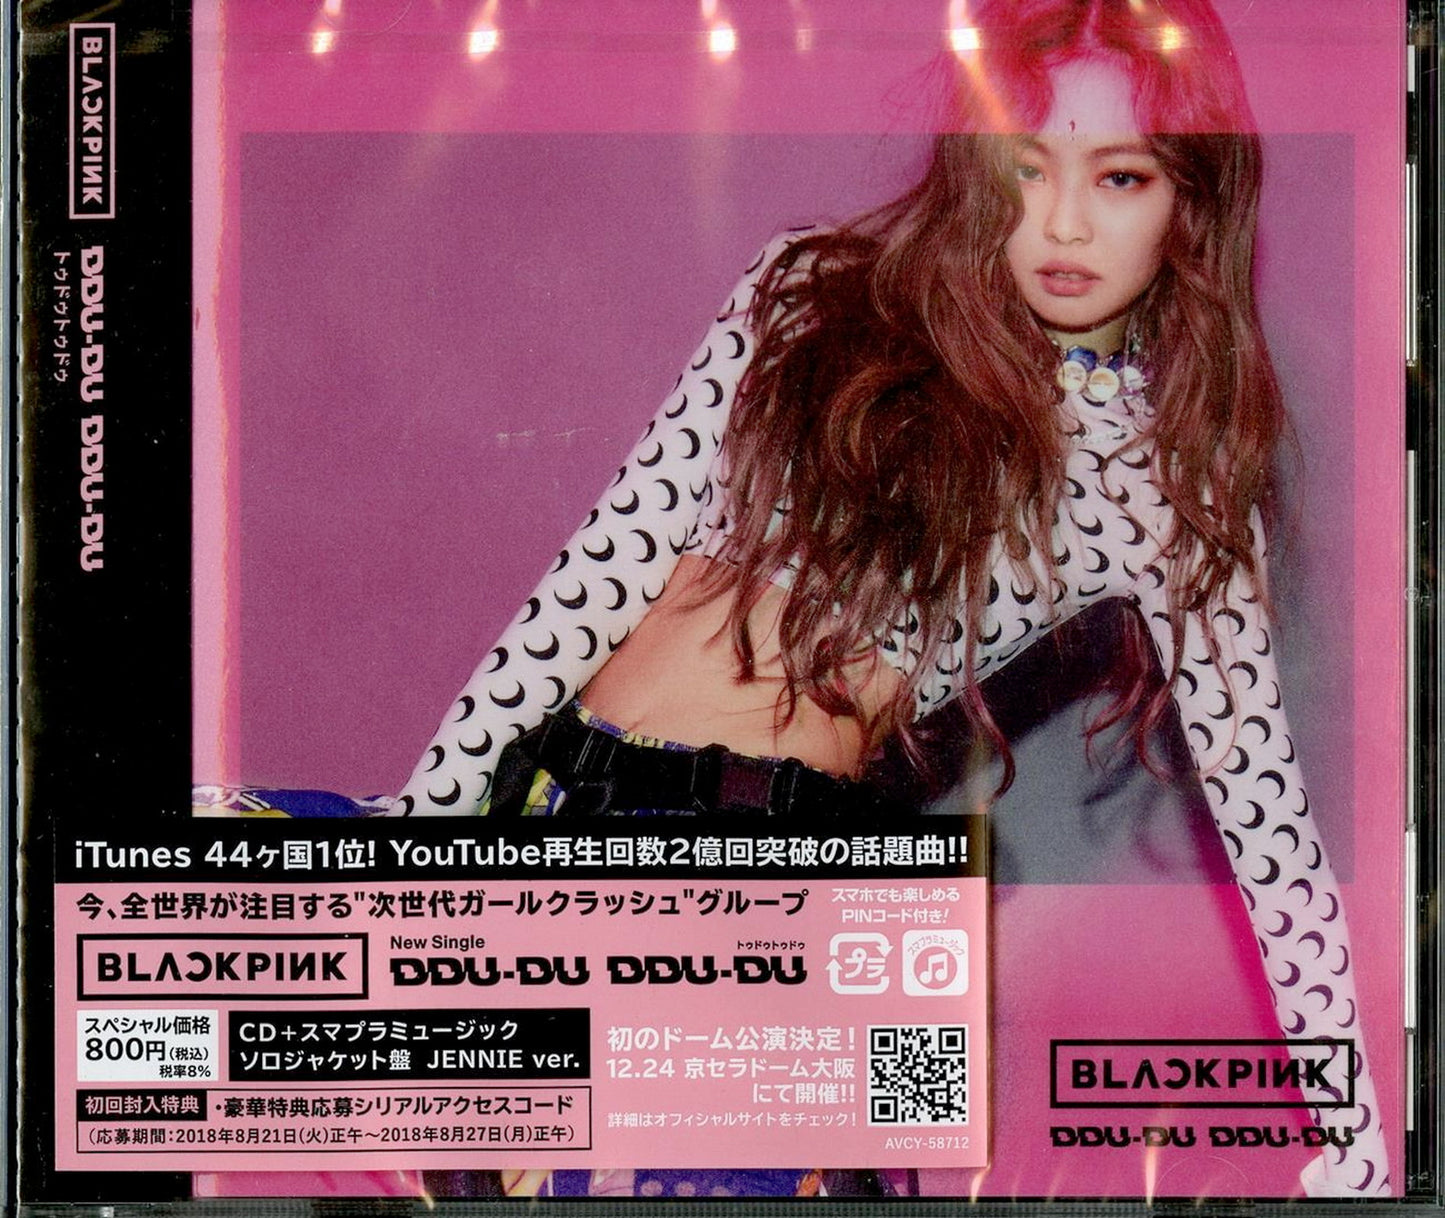 Blackpink - DDU-DU DDU-DU (Jennie Ver.) - Japan  CD